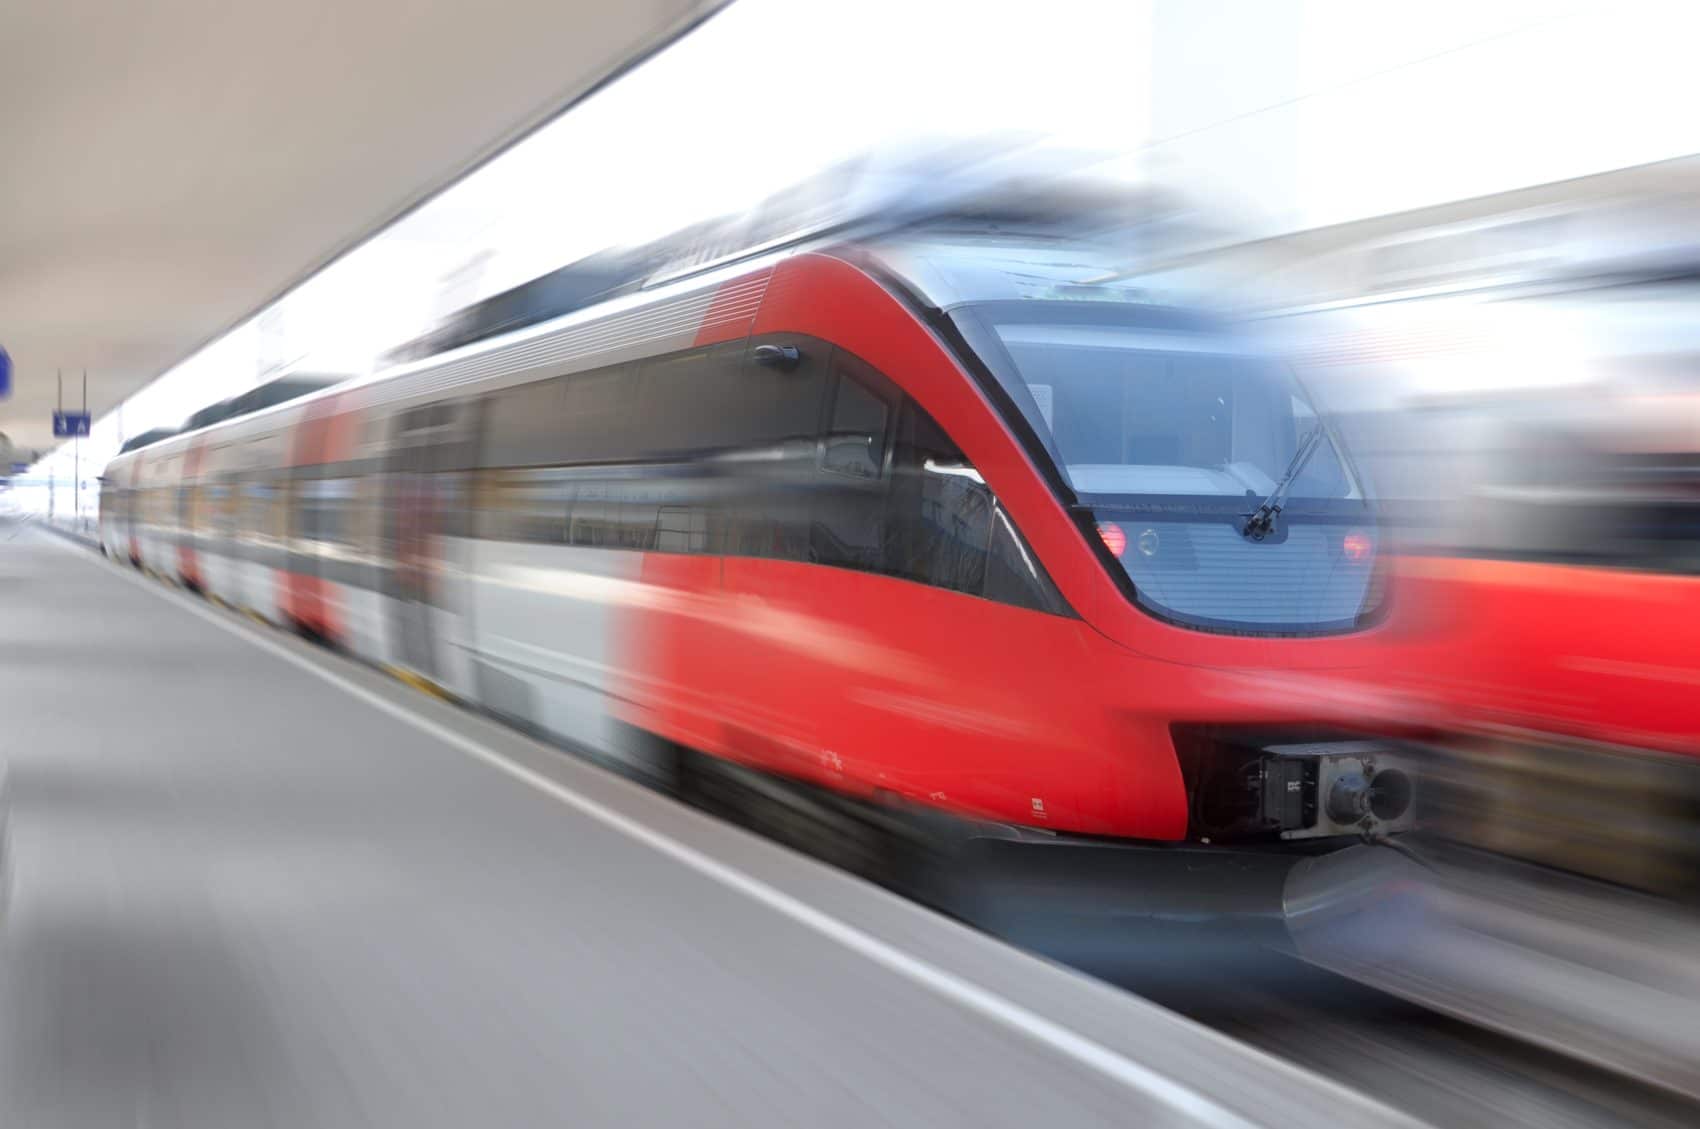 Auf einer Bahnfahrt von Klagenfurt nach Krumpendorf kam es heute zu einer Auseinandersetzung zwischen einem Fahrgast und einem Zugbegleiter.